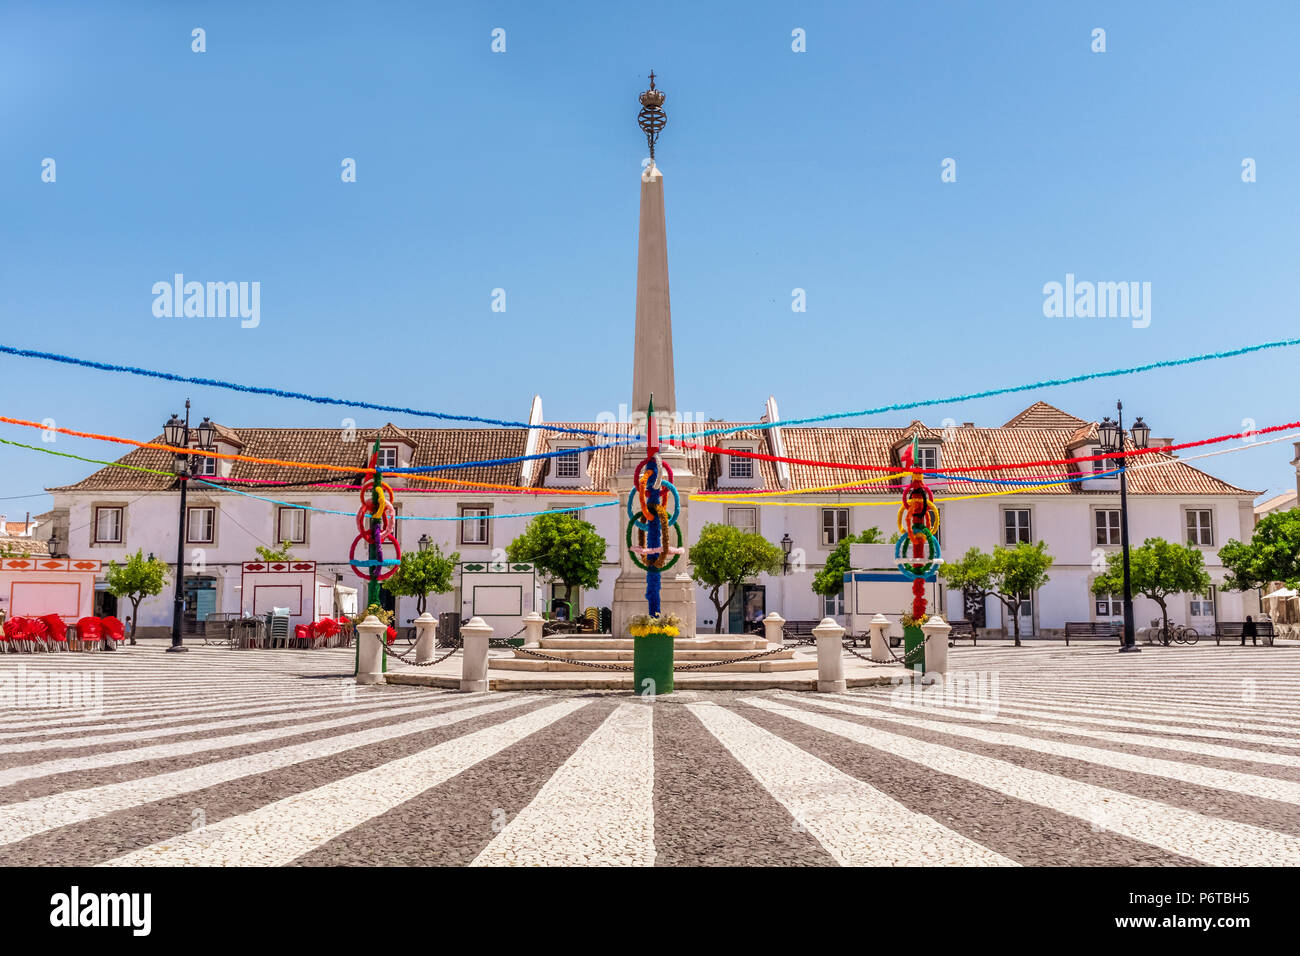 Vila Real de Santo Antonio, Algarve, Portugal. L'attrayant et pavage monument de la place principale de la ville avec le festival bunting Banque D'Images